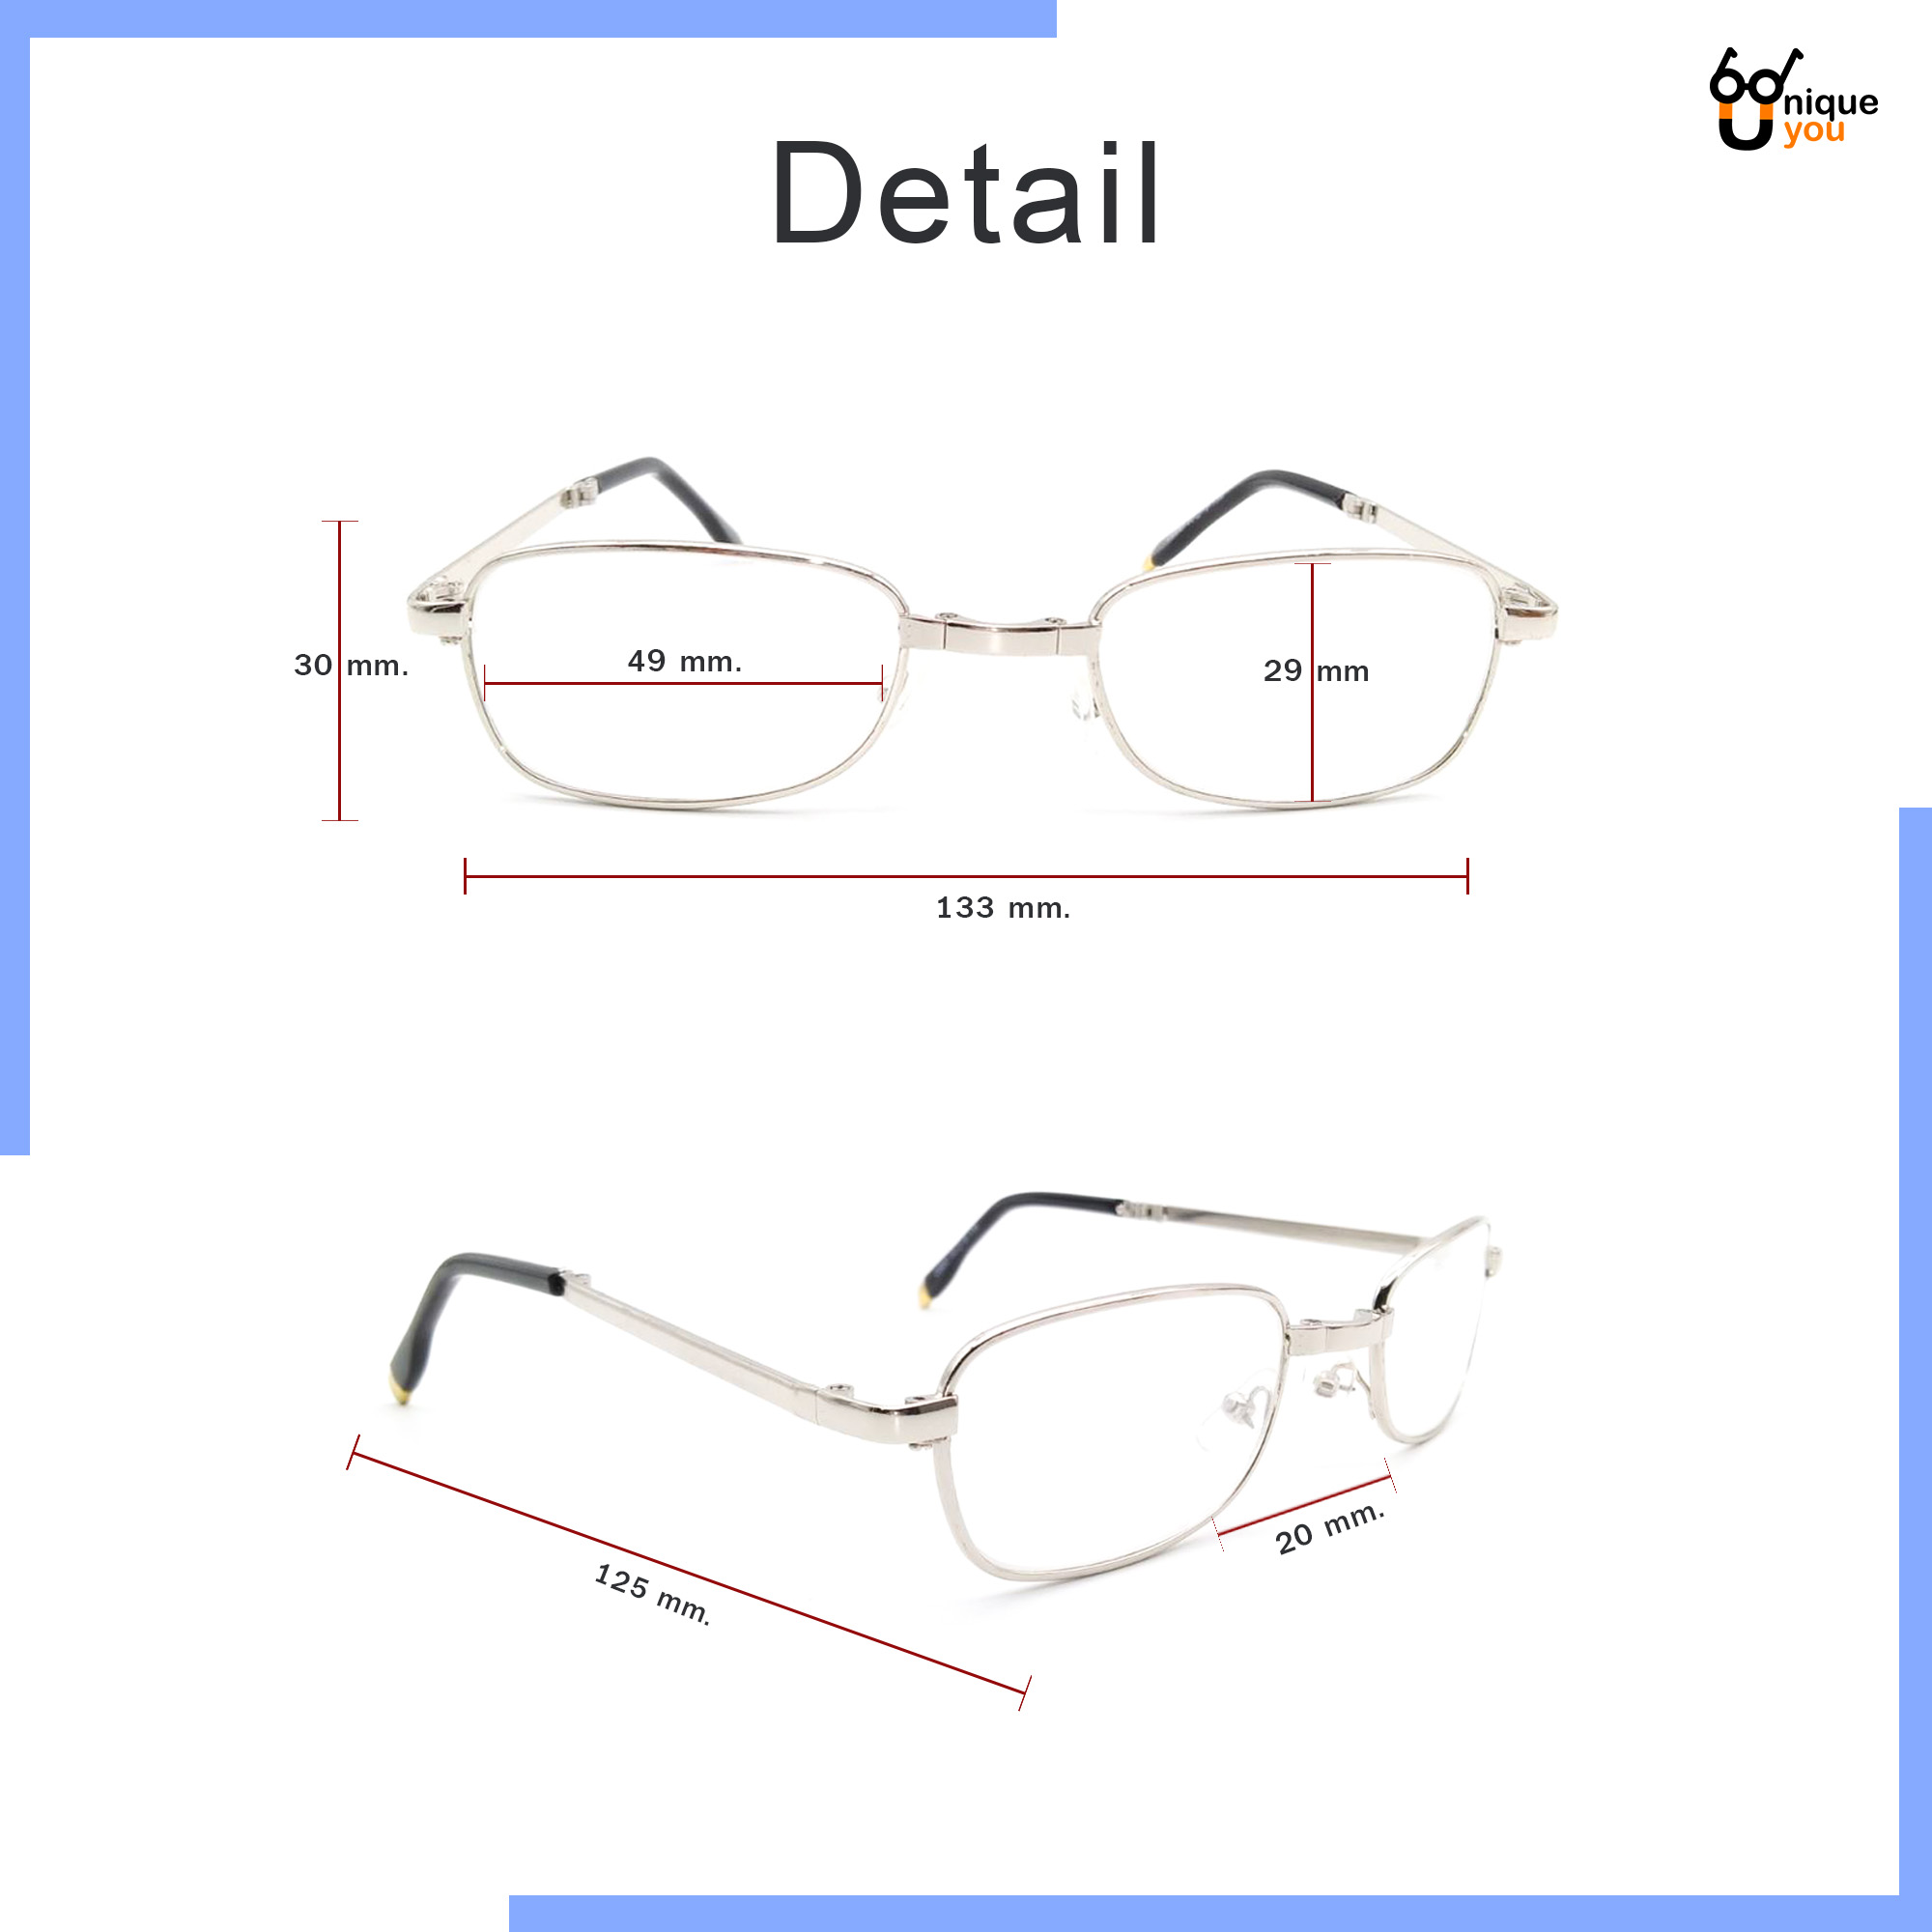 ข้อมูลเพิ่มเติมของ Uniq แว่นสายตายยาว พับได้ เลนส์กระจก แว่สายตากรอบแว่นพับได้ แว่นตาพับได้ แว่นสำหรับอ่านหนังสือ แว่นผู้สูงอายุ แว่นสายตาสำหรับอ่านหนอ